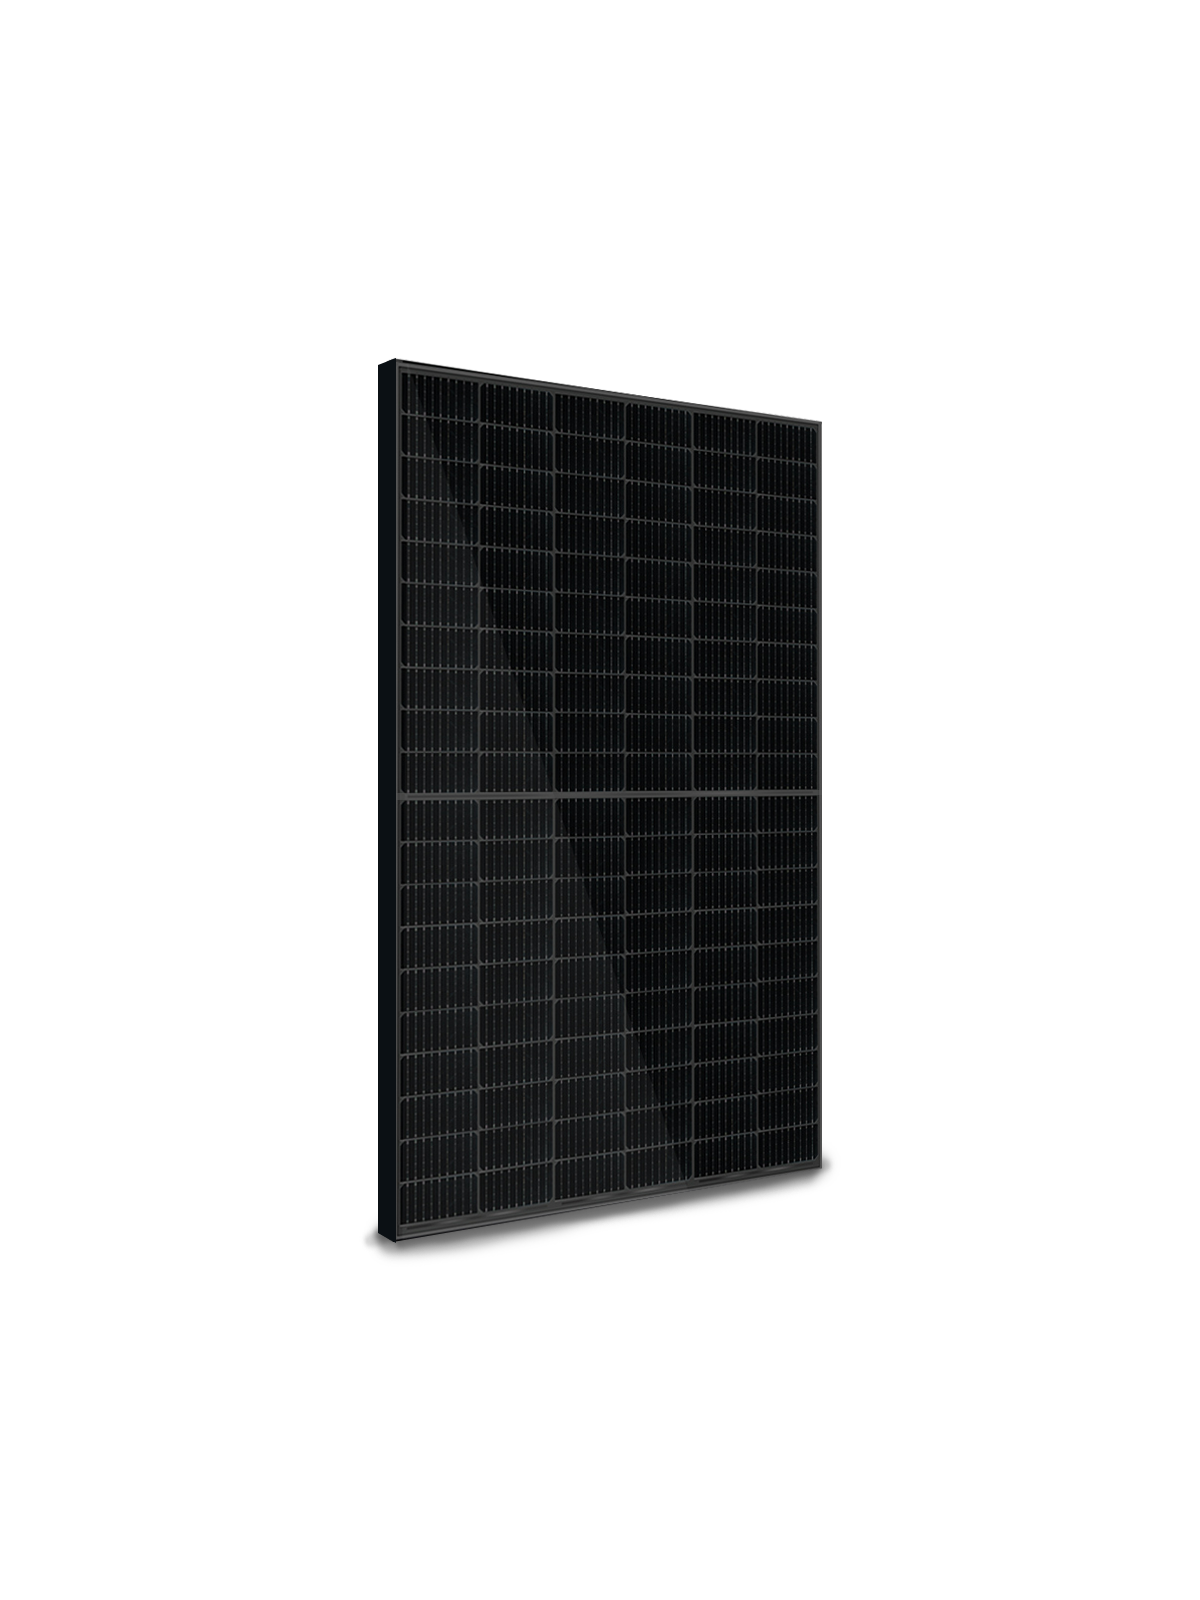 Kit solar autoconsumo de 6 Kw trifasico instalación incluida -Sol